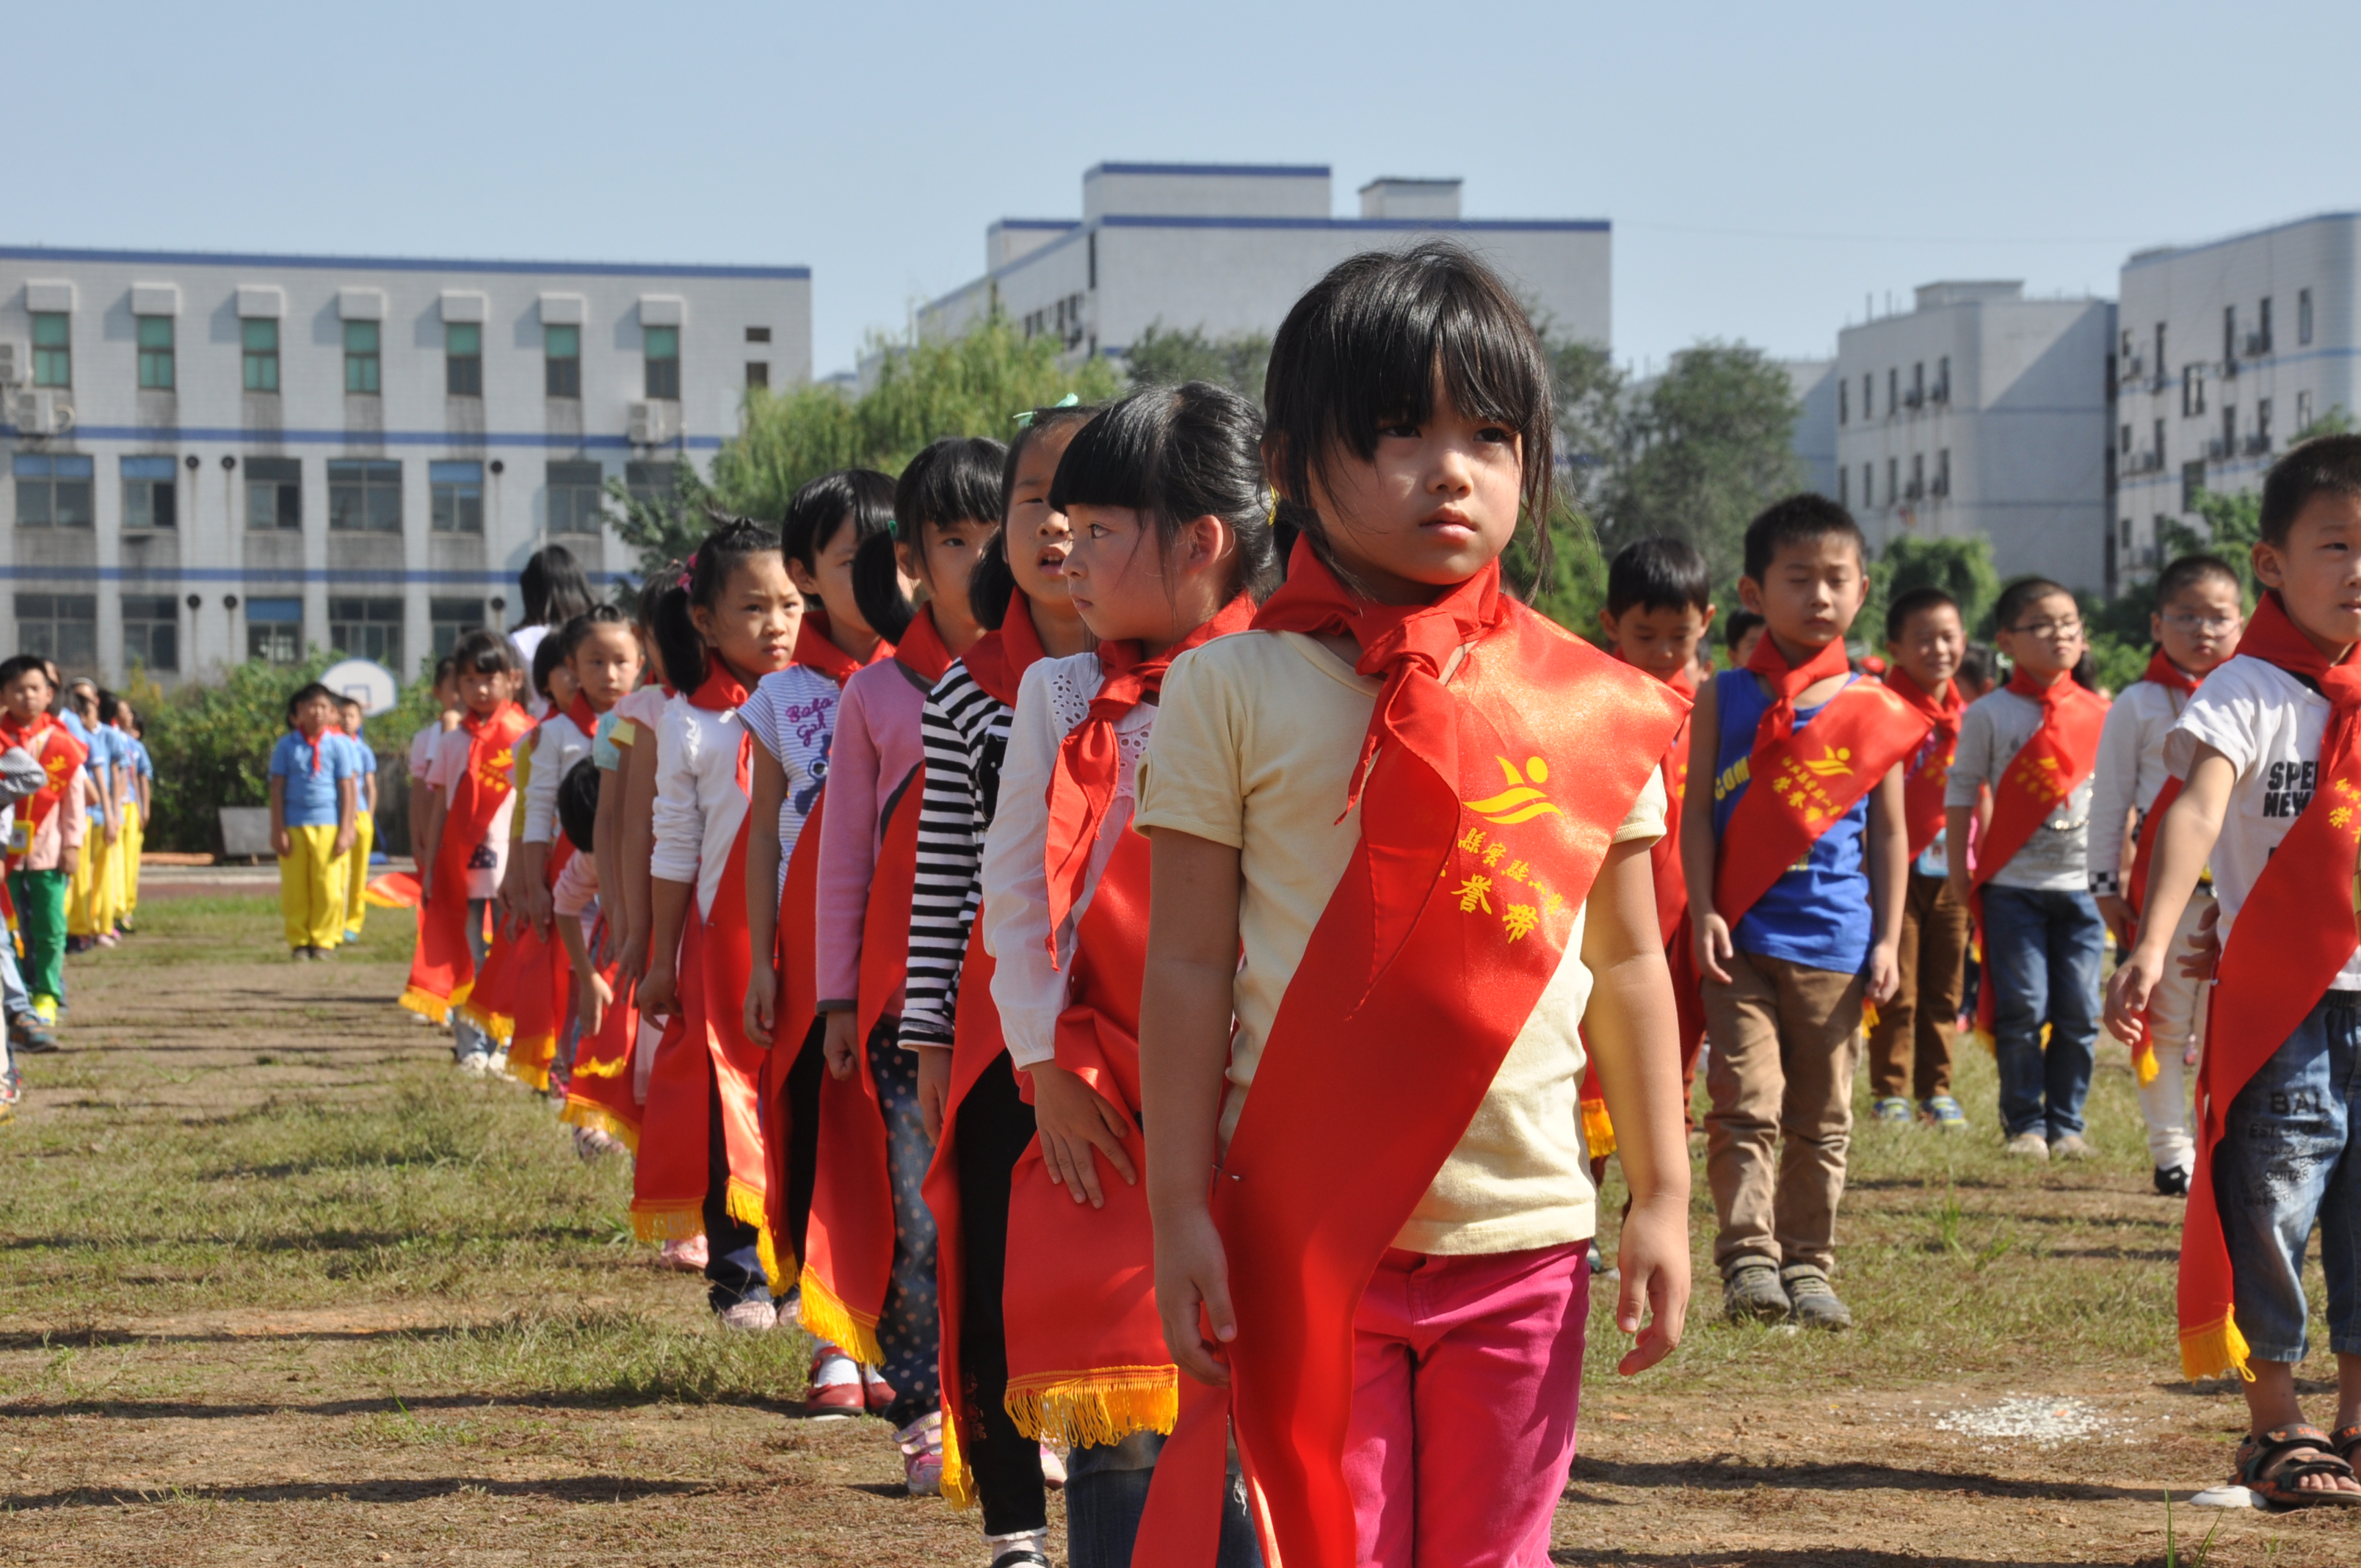 绍兴县实验小学举行新生入队仪式暨实小荣誉